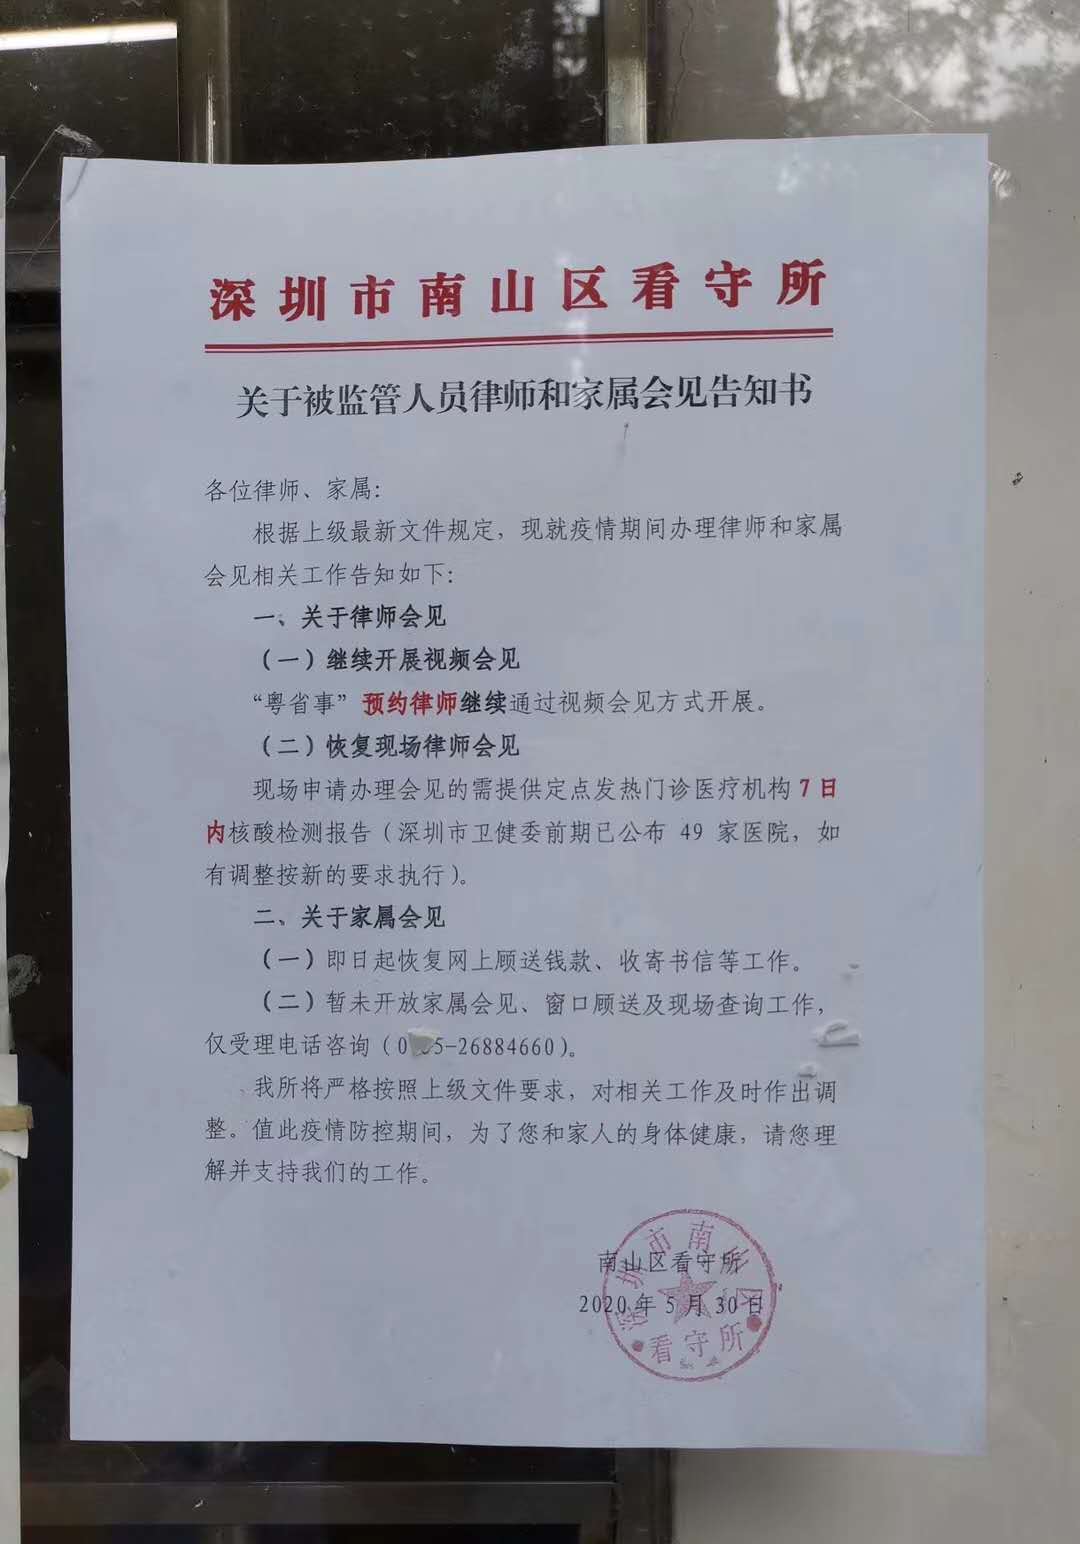 深圳市南山区看守所关于监管人员律师和家属会见告知书